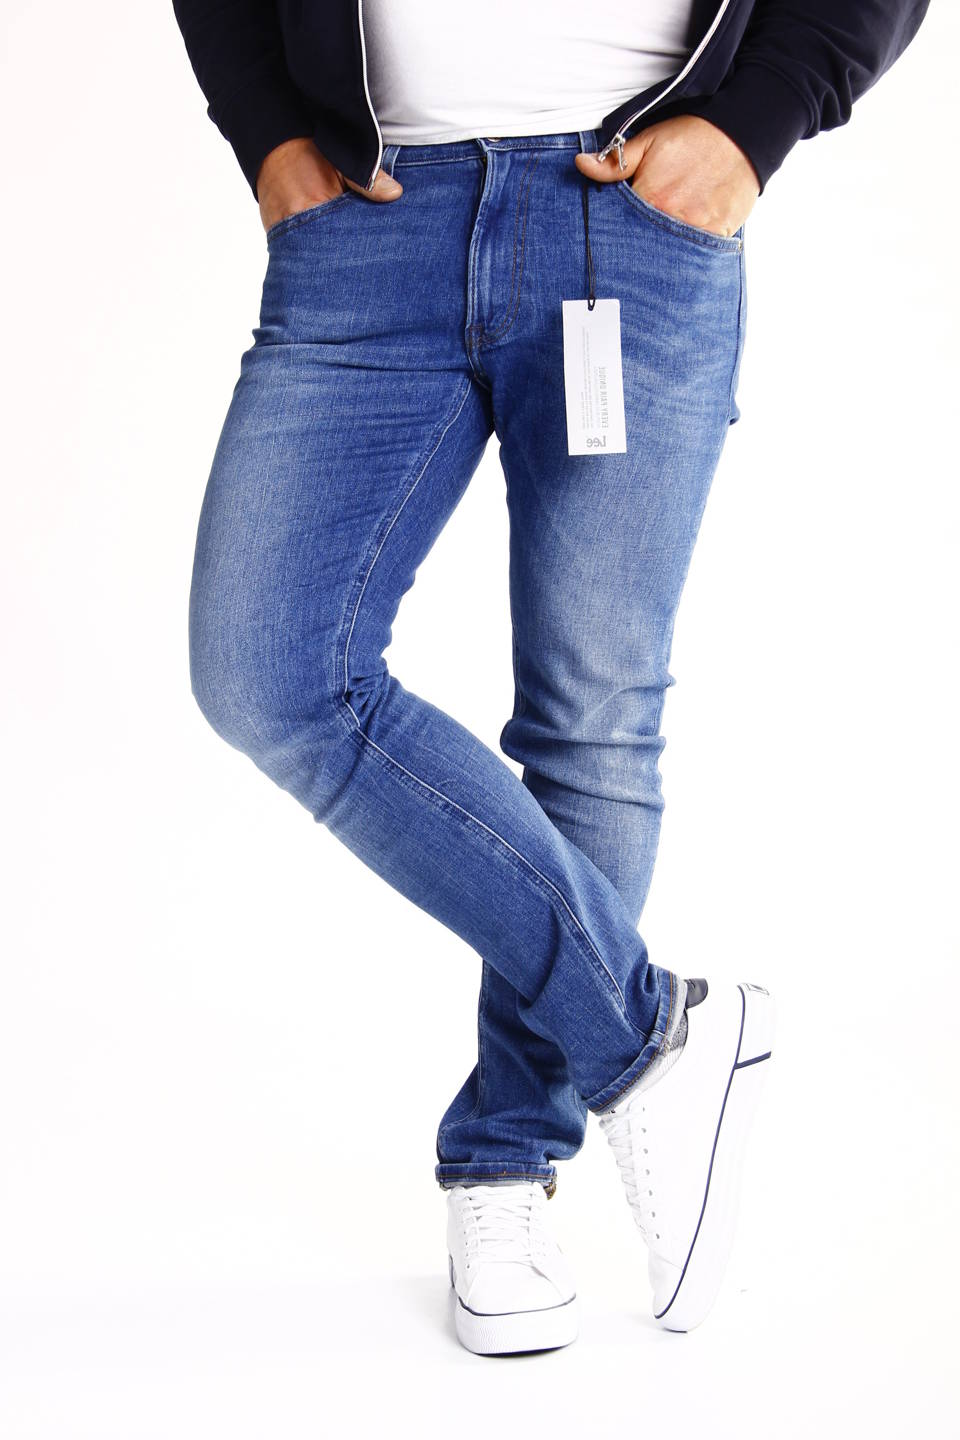 lee-luke-fresh-m-skie-spodnie-jeansy-slim-rurki-l719roig-w38-l34